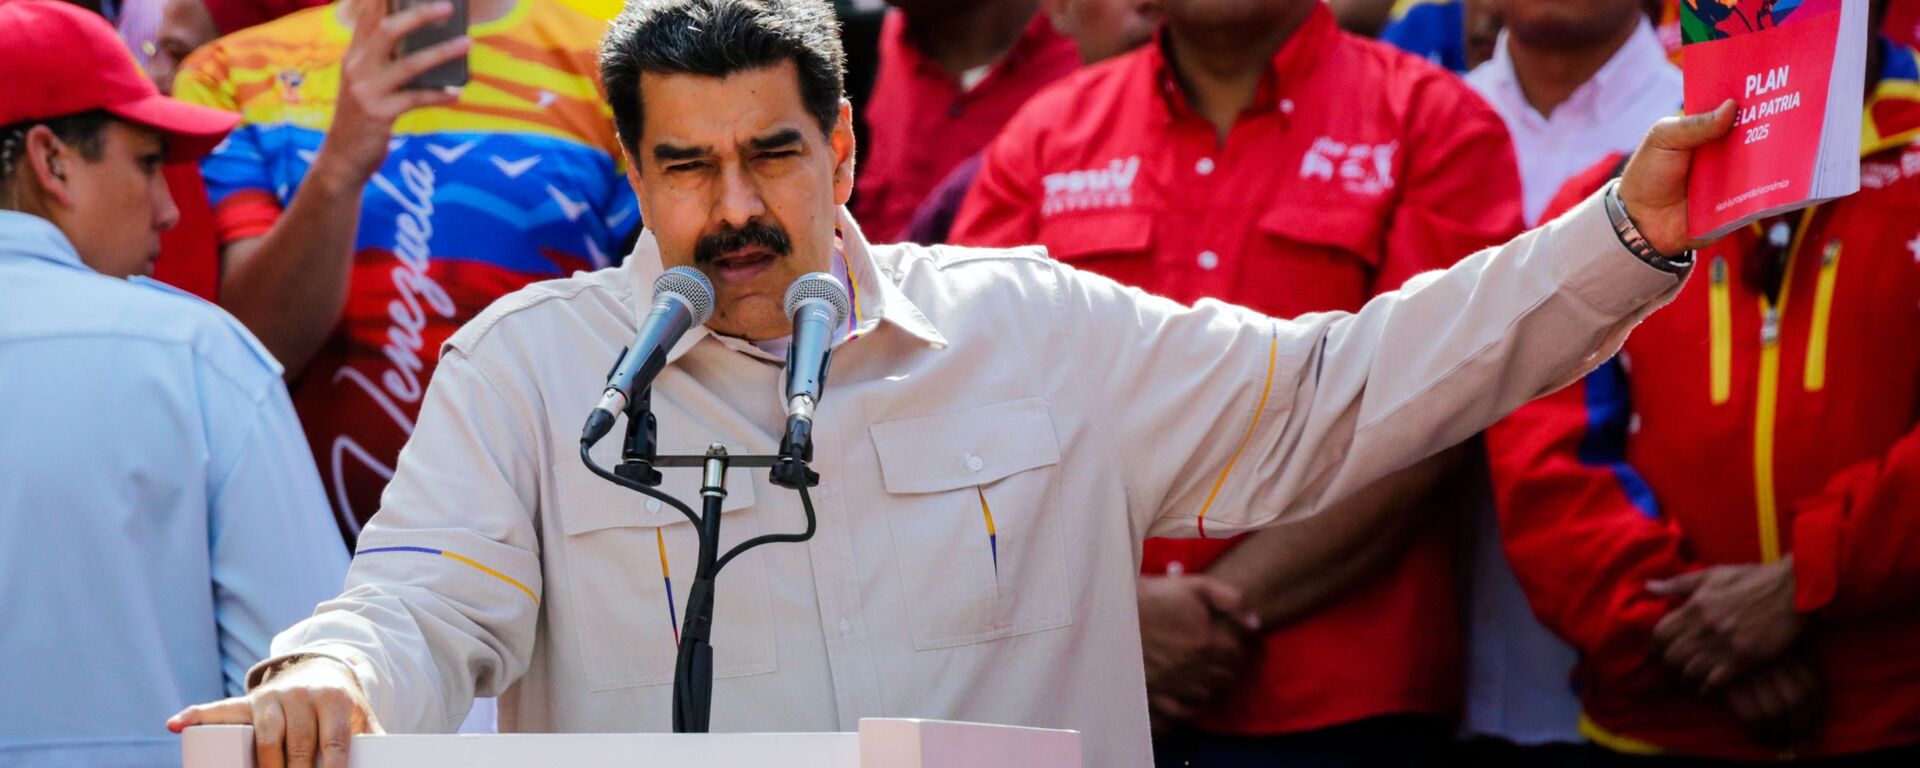 Президент Венесуэлы Николас Мадуро выступает в Каракасе на акции своих сторонников - Sputnik Абхазия, 1920, 03.03.2022